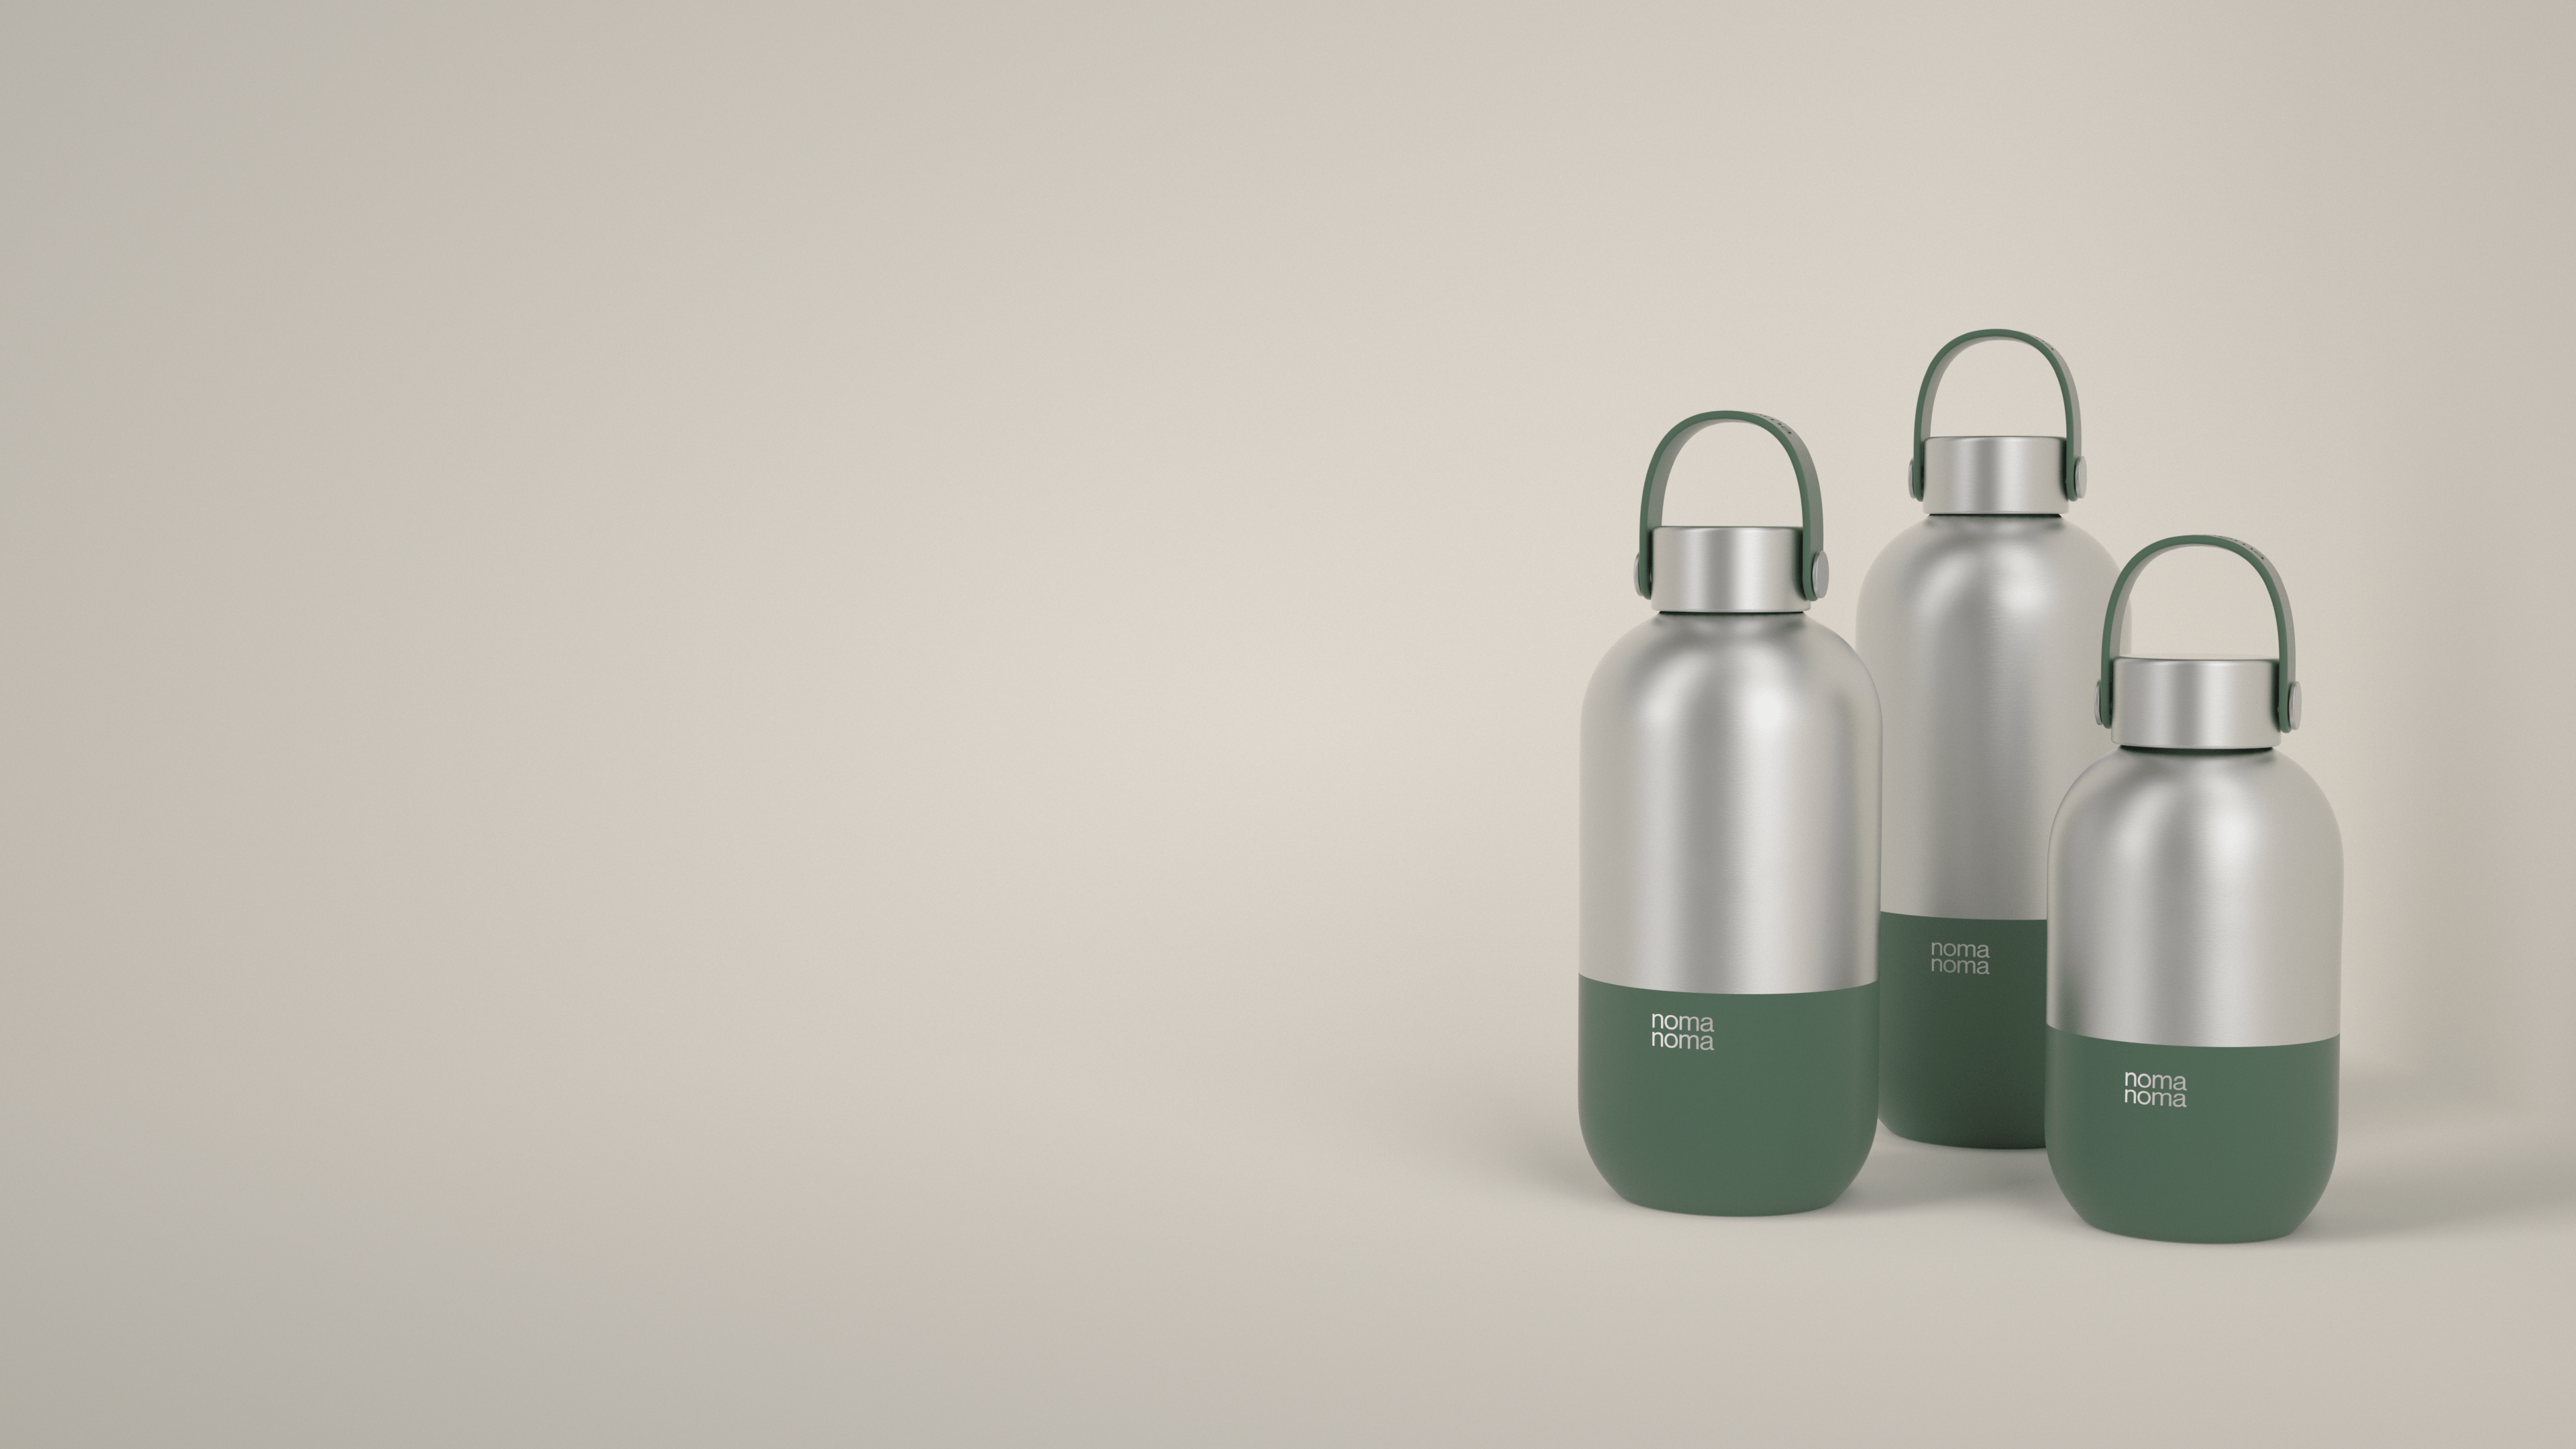 Die dunkelgrüne Trinkflasche von noma noma gibt es in drei praktischen Größen.